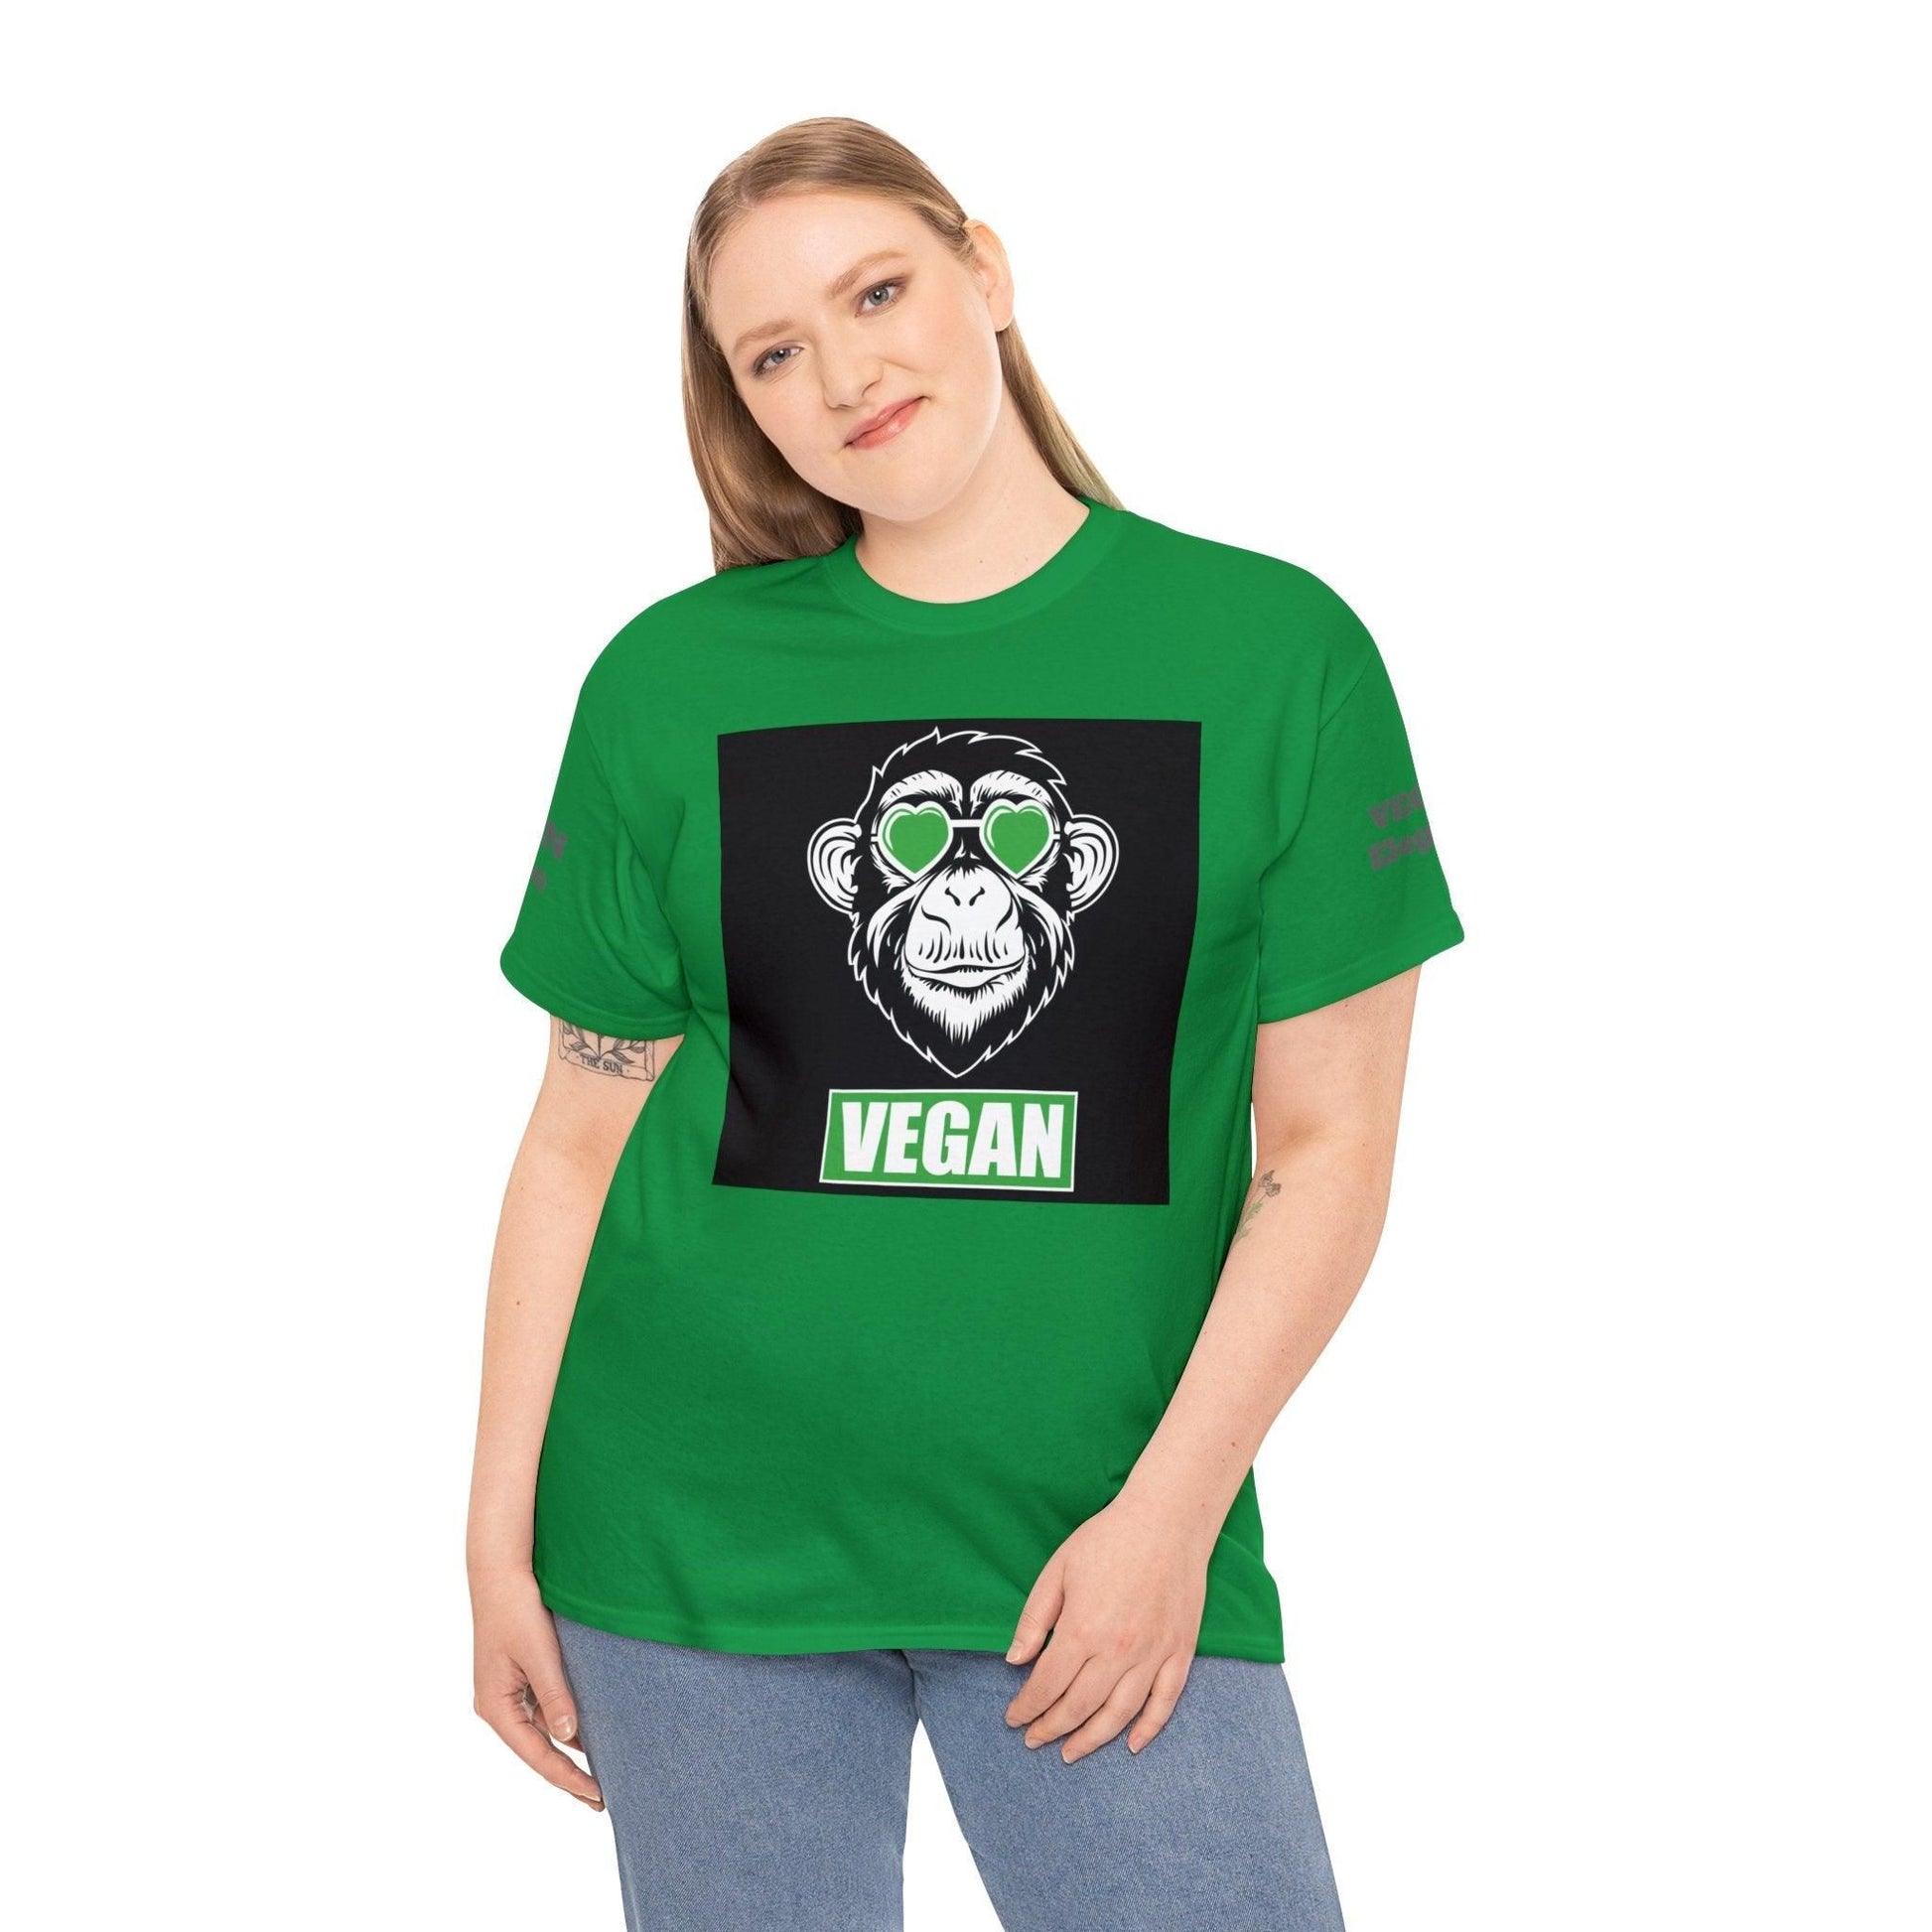 Vegan Premium Unisex Tee T-Shirt Irish Green S 